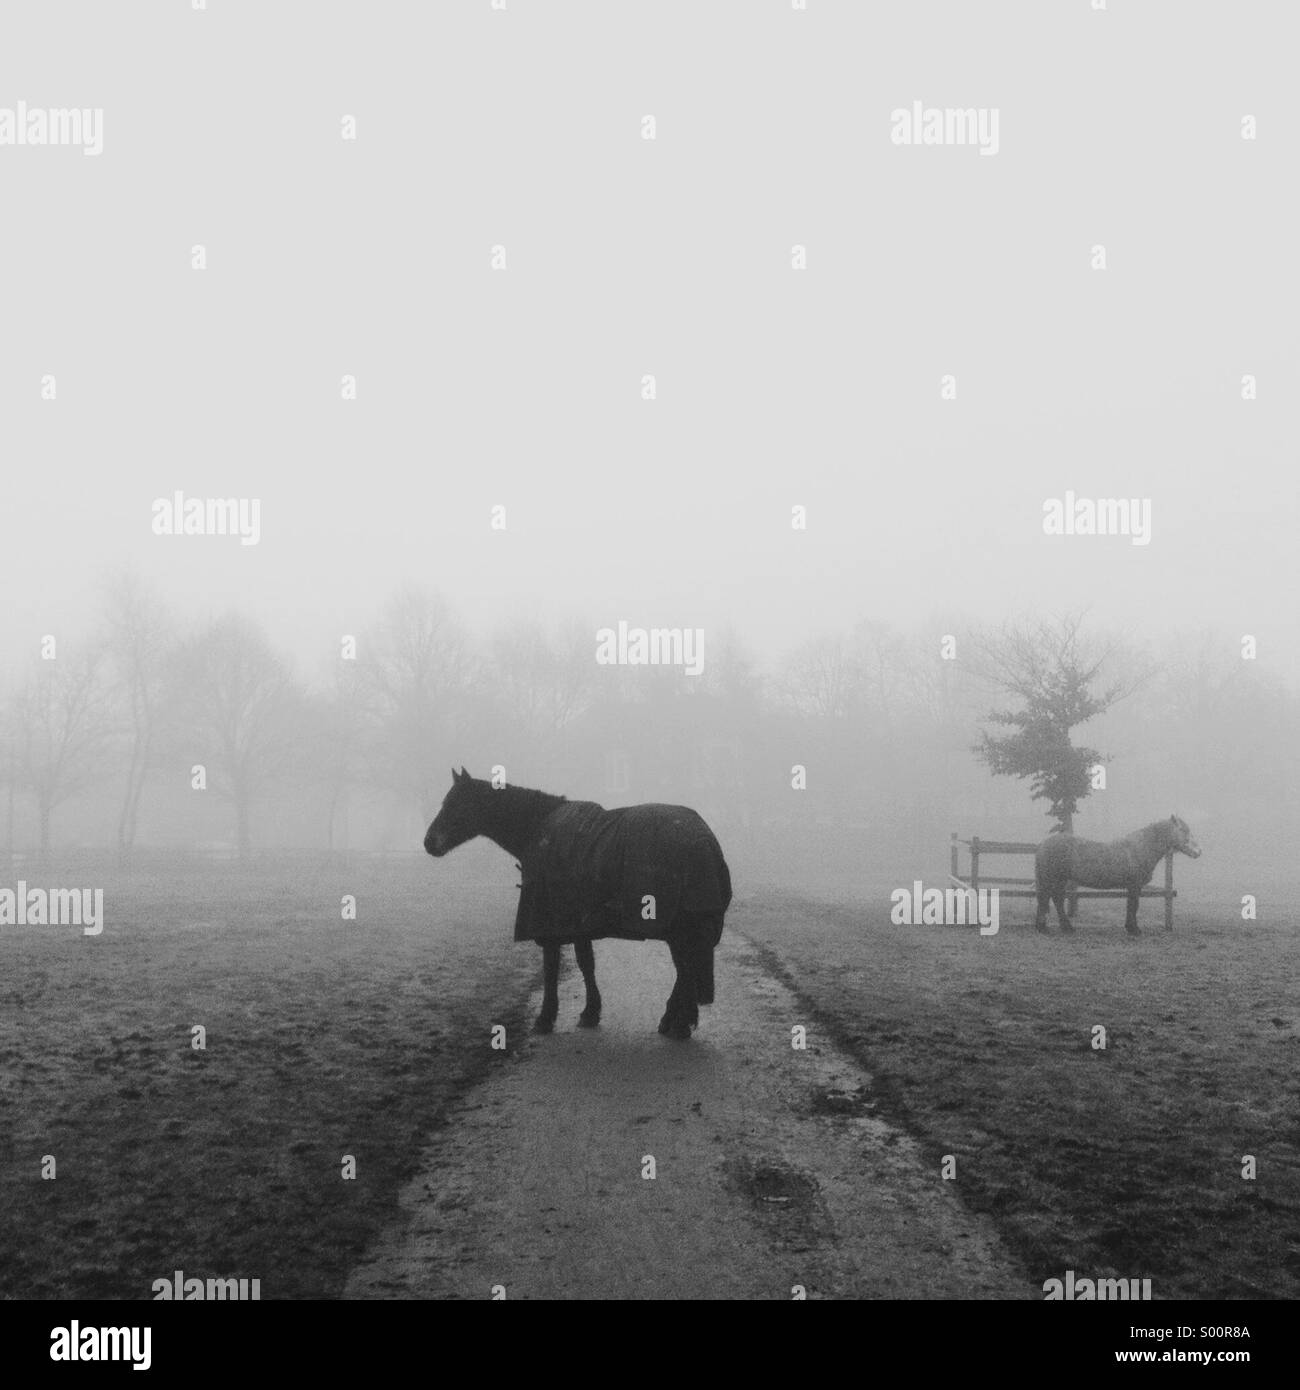 Un cavallo che indossa un cappotto fermamente blocca il percorso in una nebbiosa scena. Un secondo cavallo in distanza. Foto Stock